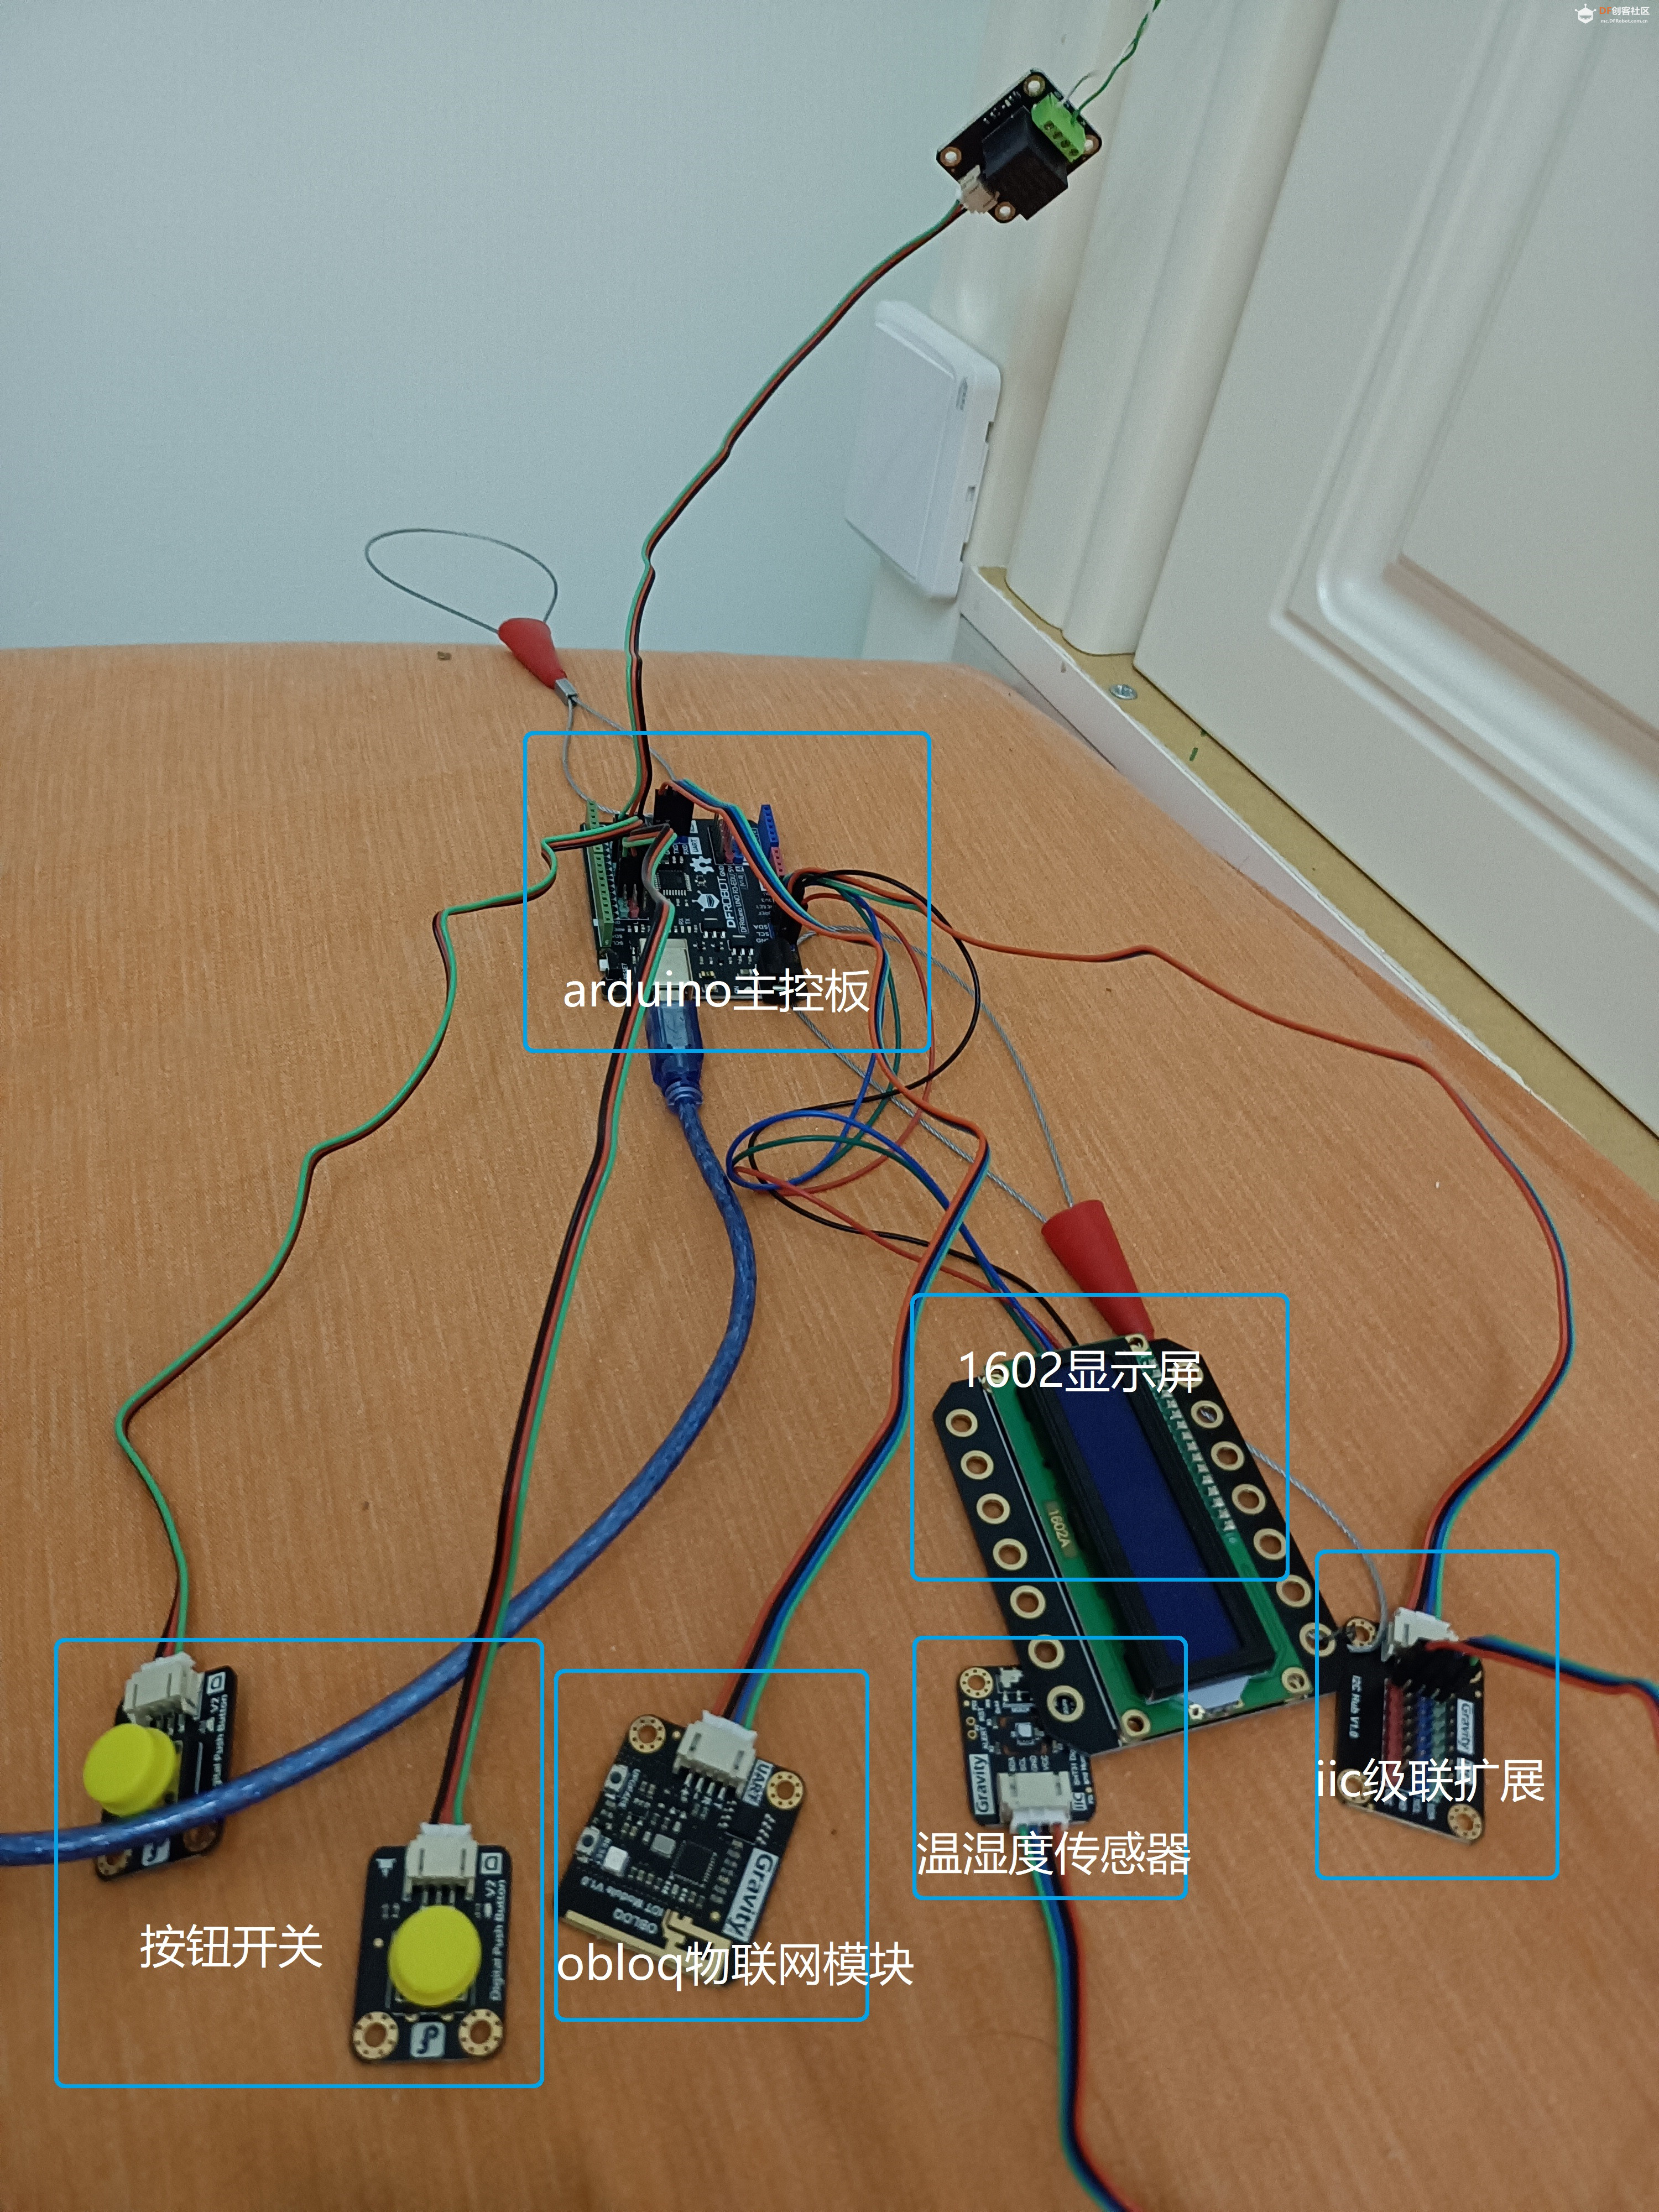 为了节省燃气，用arduino板做了个壁挂炉温控器图1